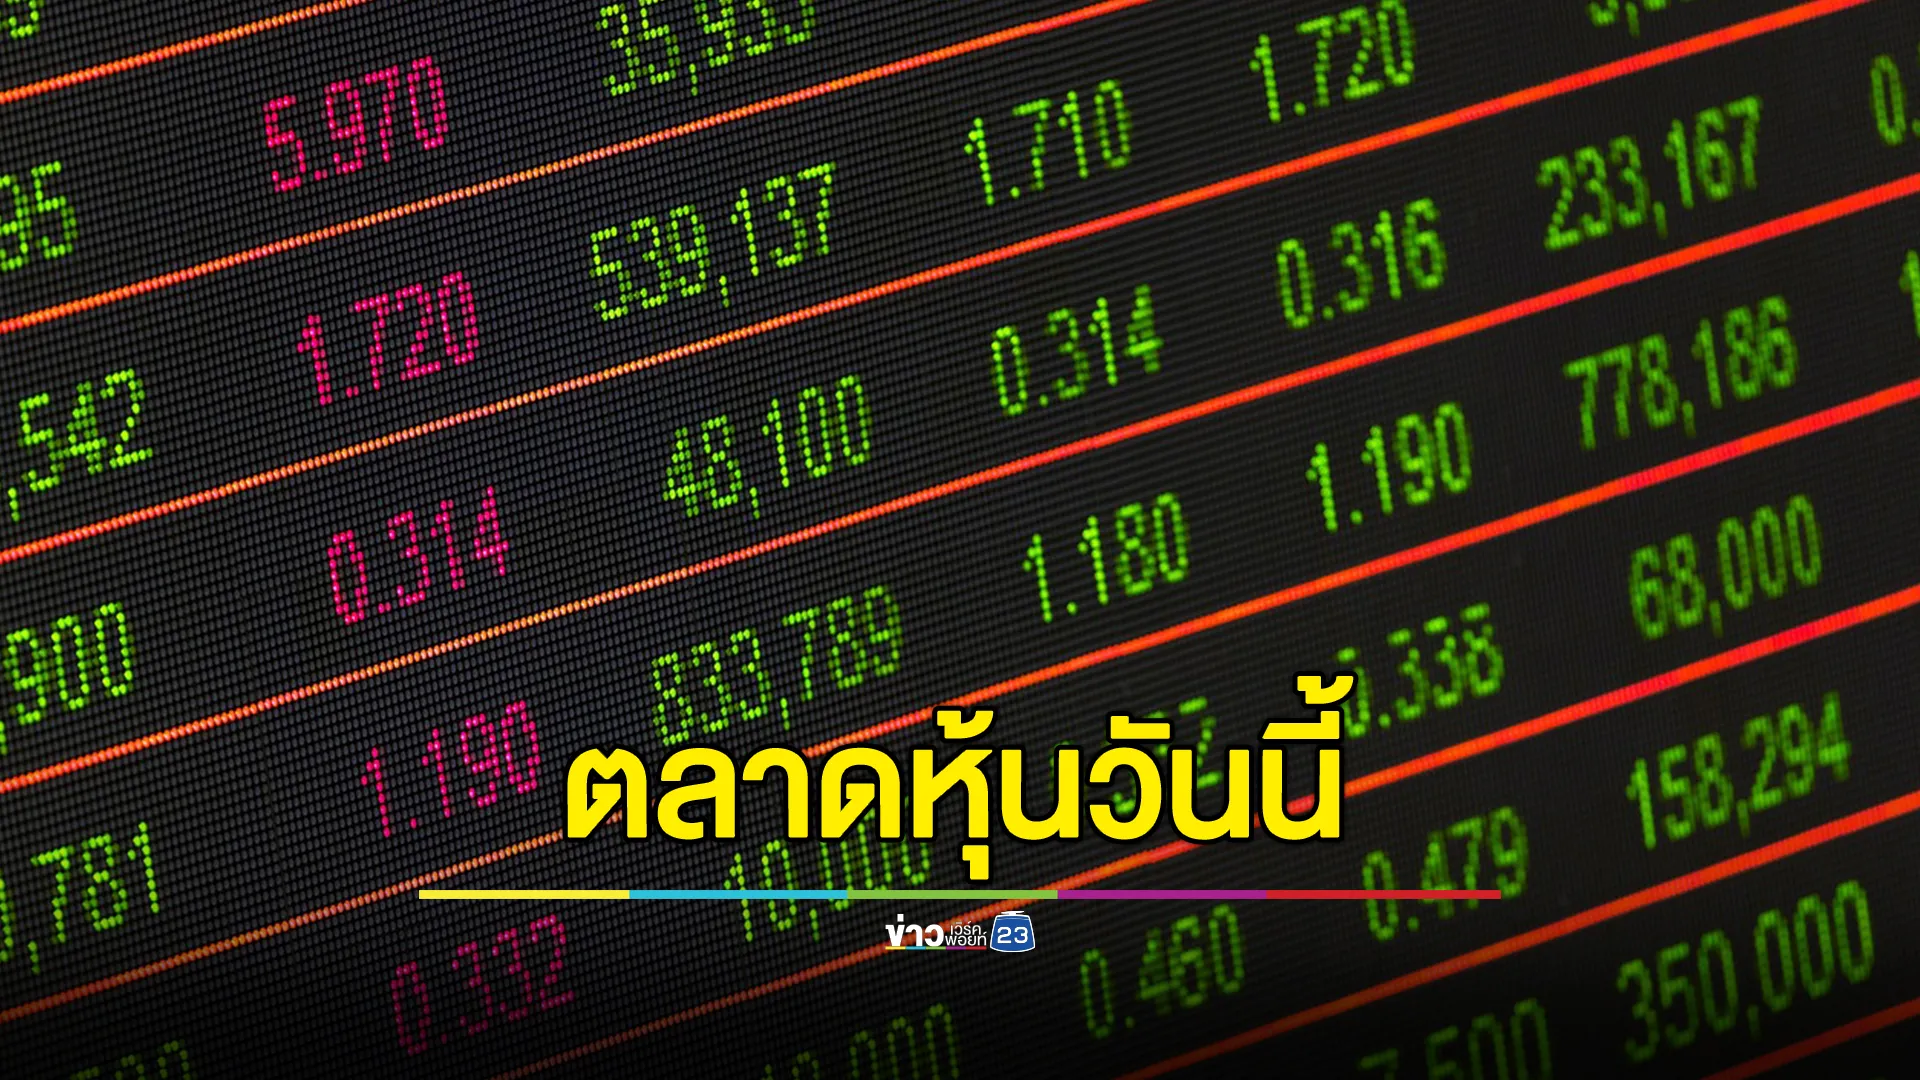 อัปเดต"ตลาดหุ้นไทย"วันนี้ ปิดตลาดอยู่ที่ 1297.41 เพิ่มขึ้น +0.82 จุด 